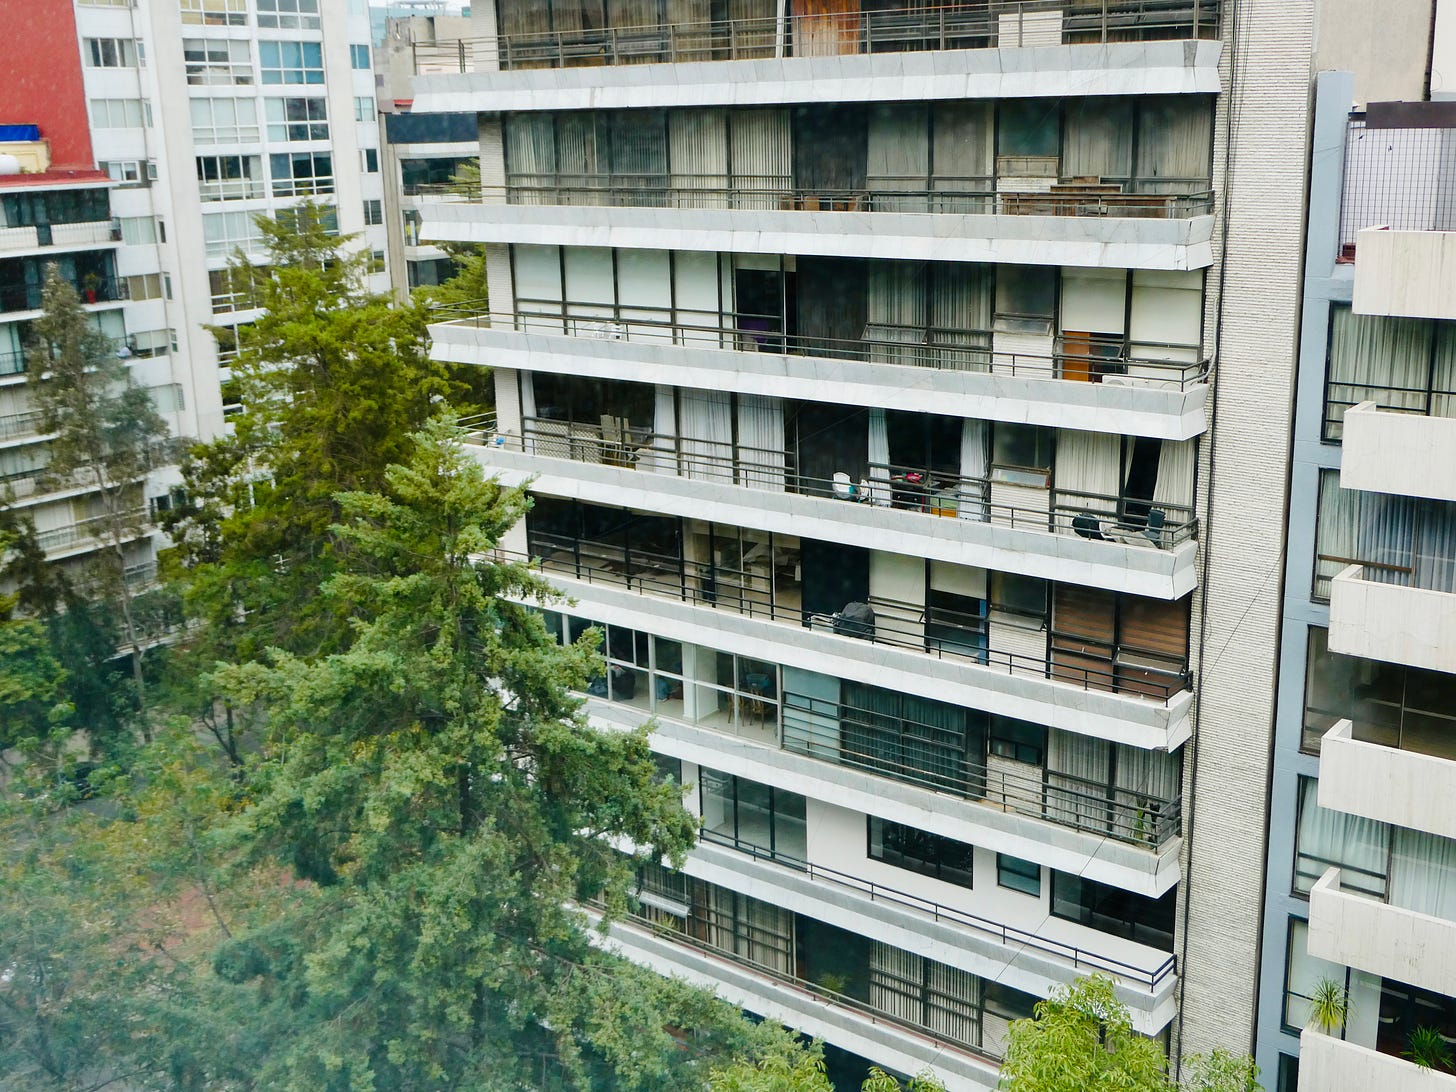 windows of apartment block